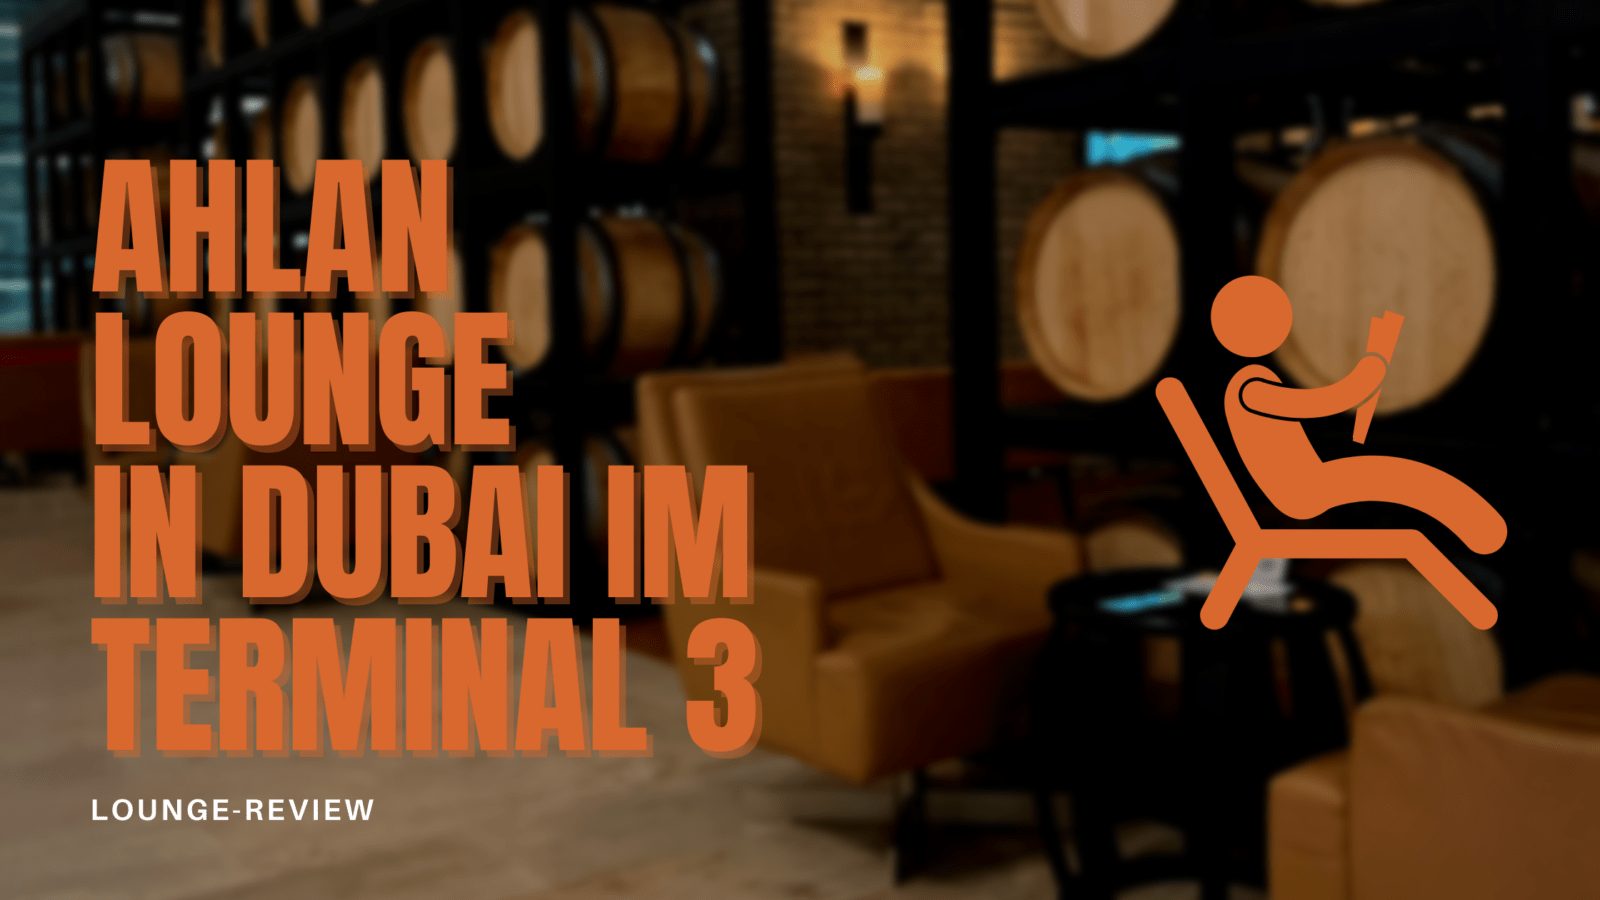 Ahlan Lounge in Dubai im Terminal 3